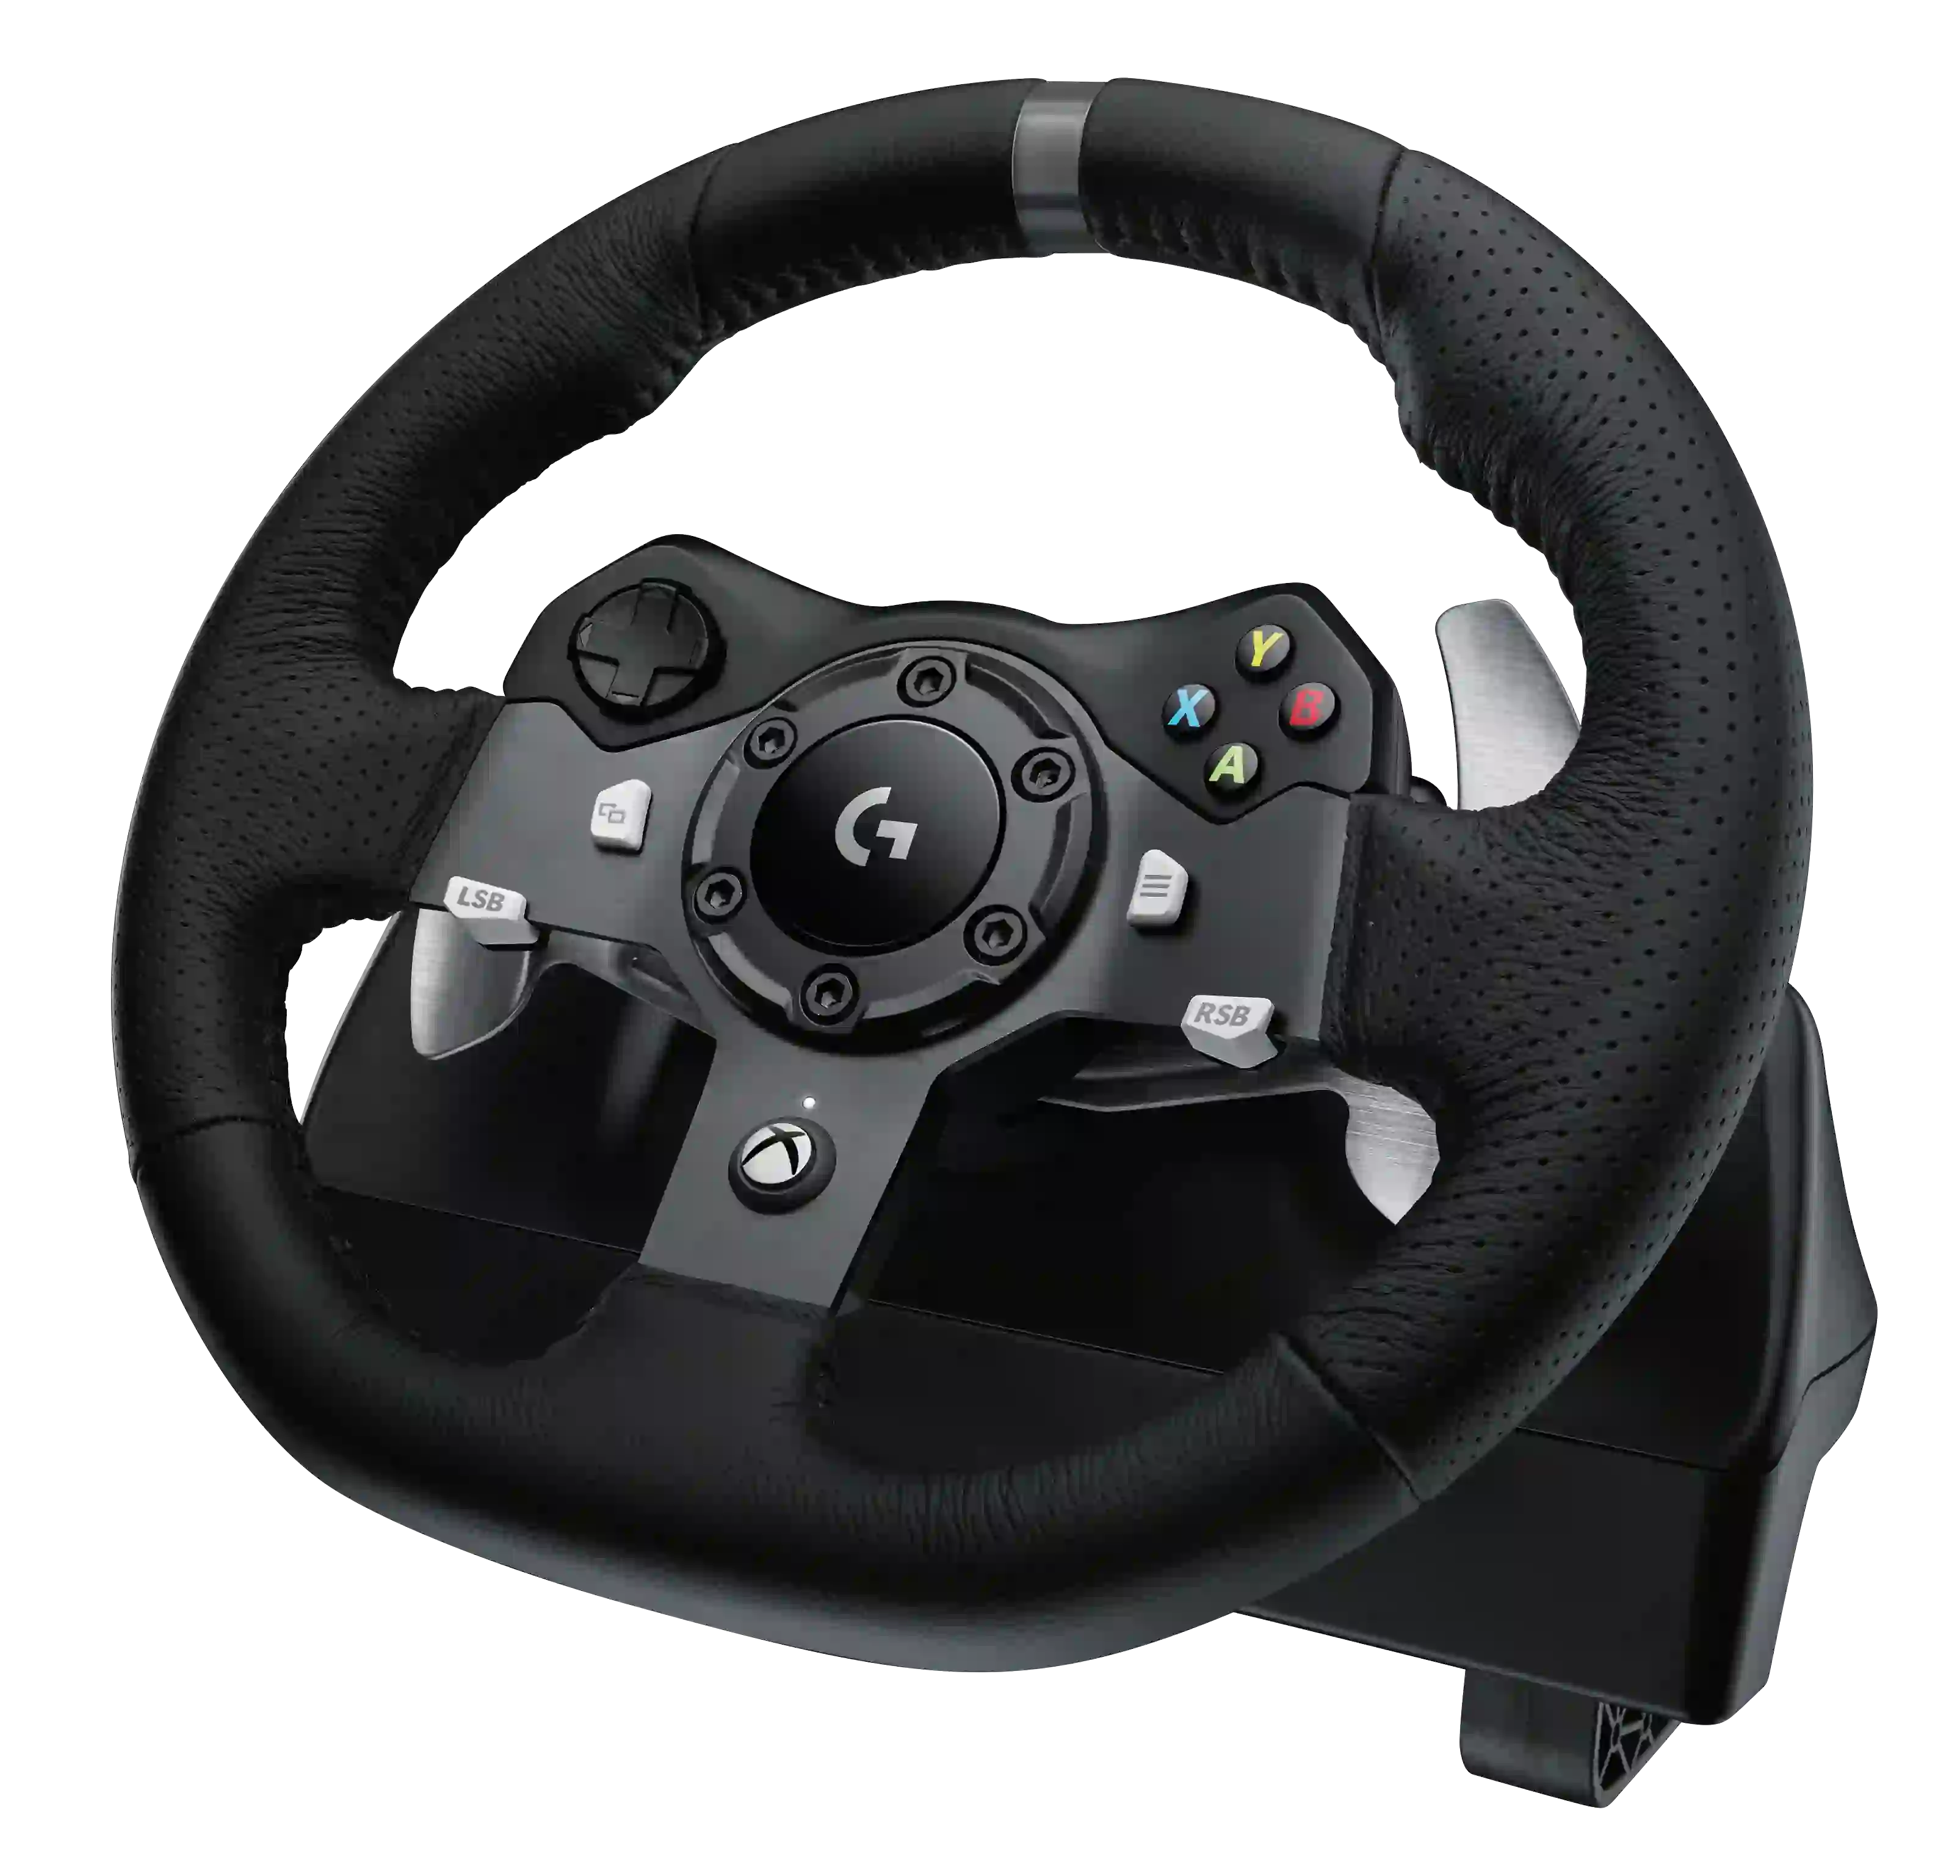 Игровой руль LOGITECH G920 Driving Force (941-000123)